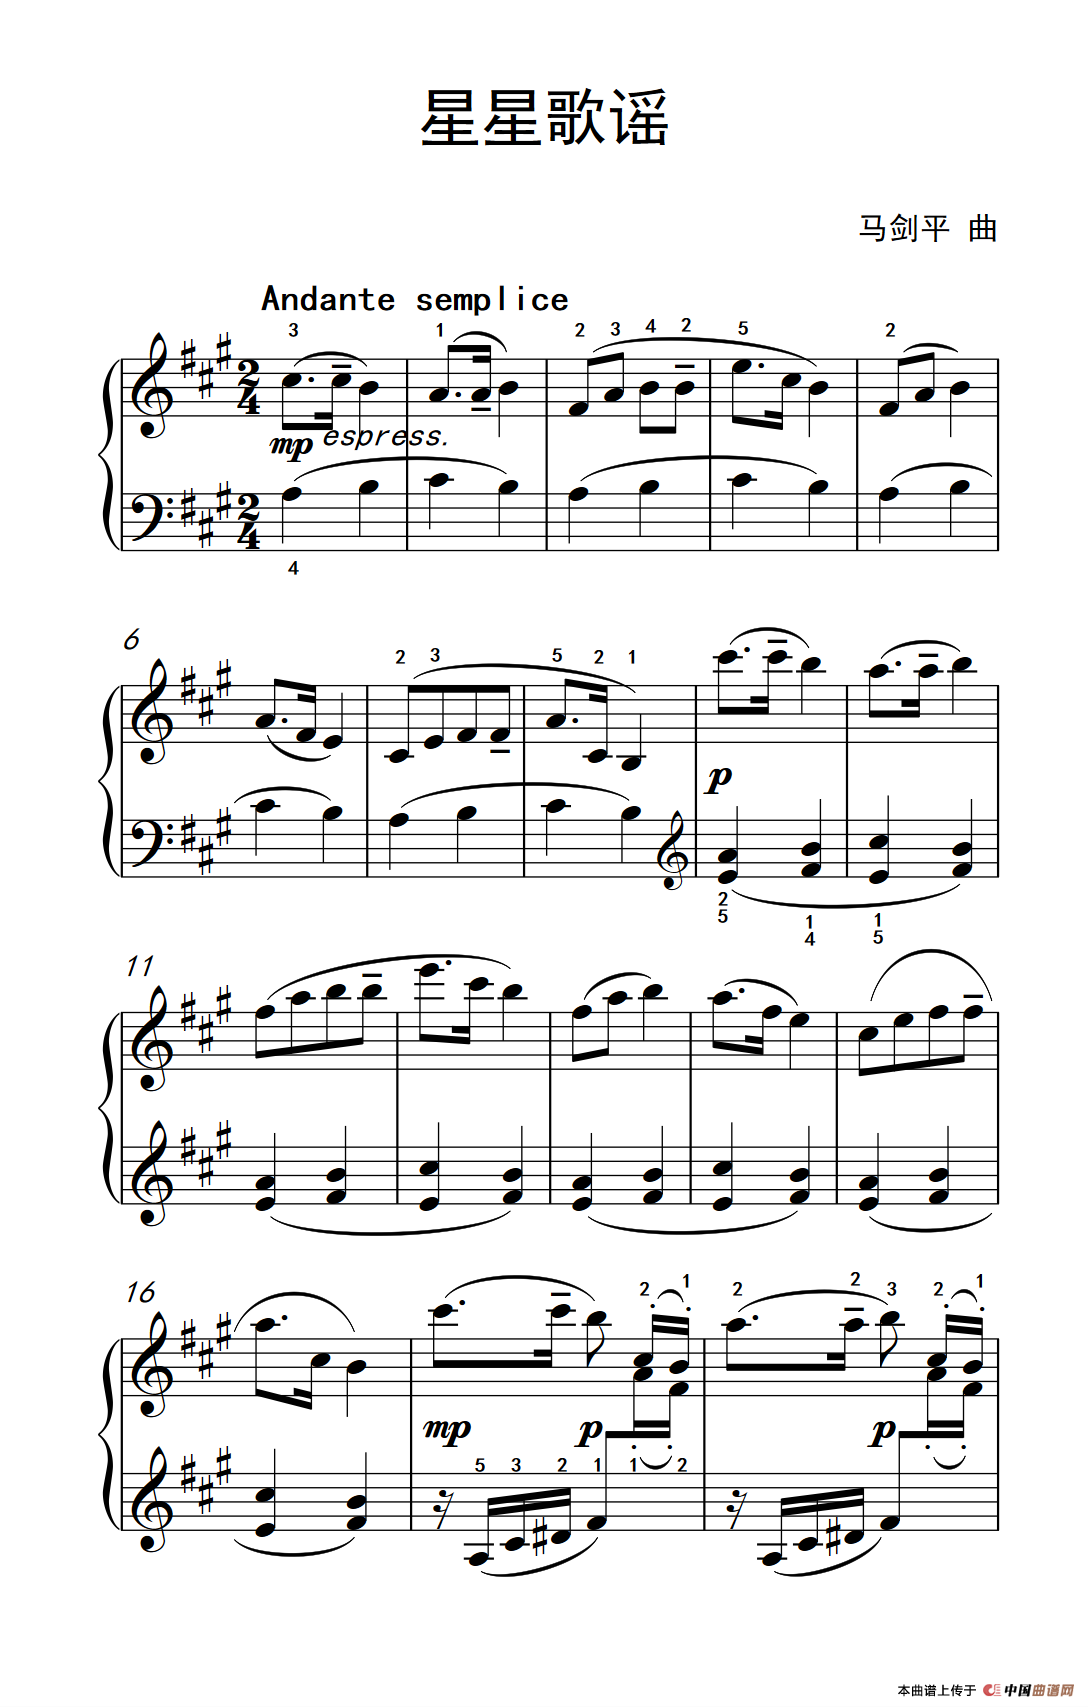 《星星歌谣》钢琴曲谱图分享